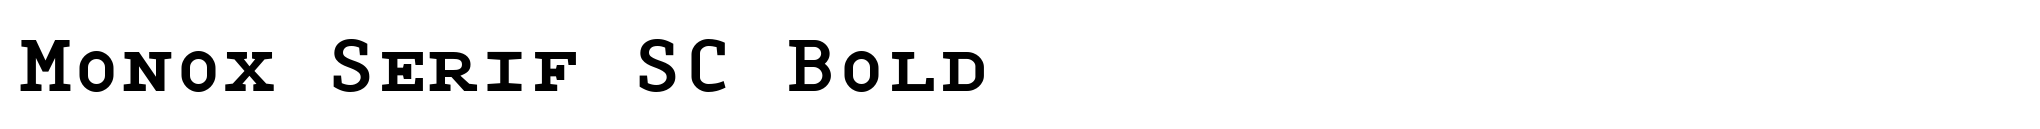 Monox Serif SC Bold image